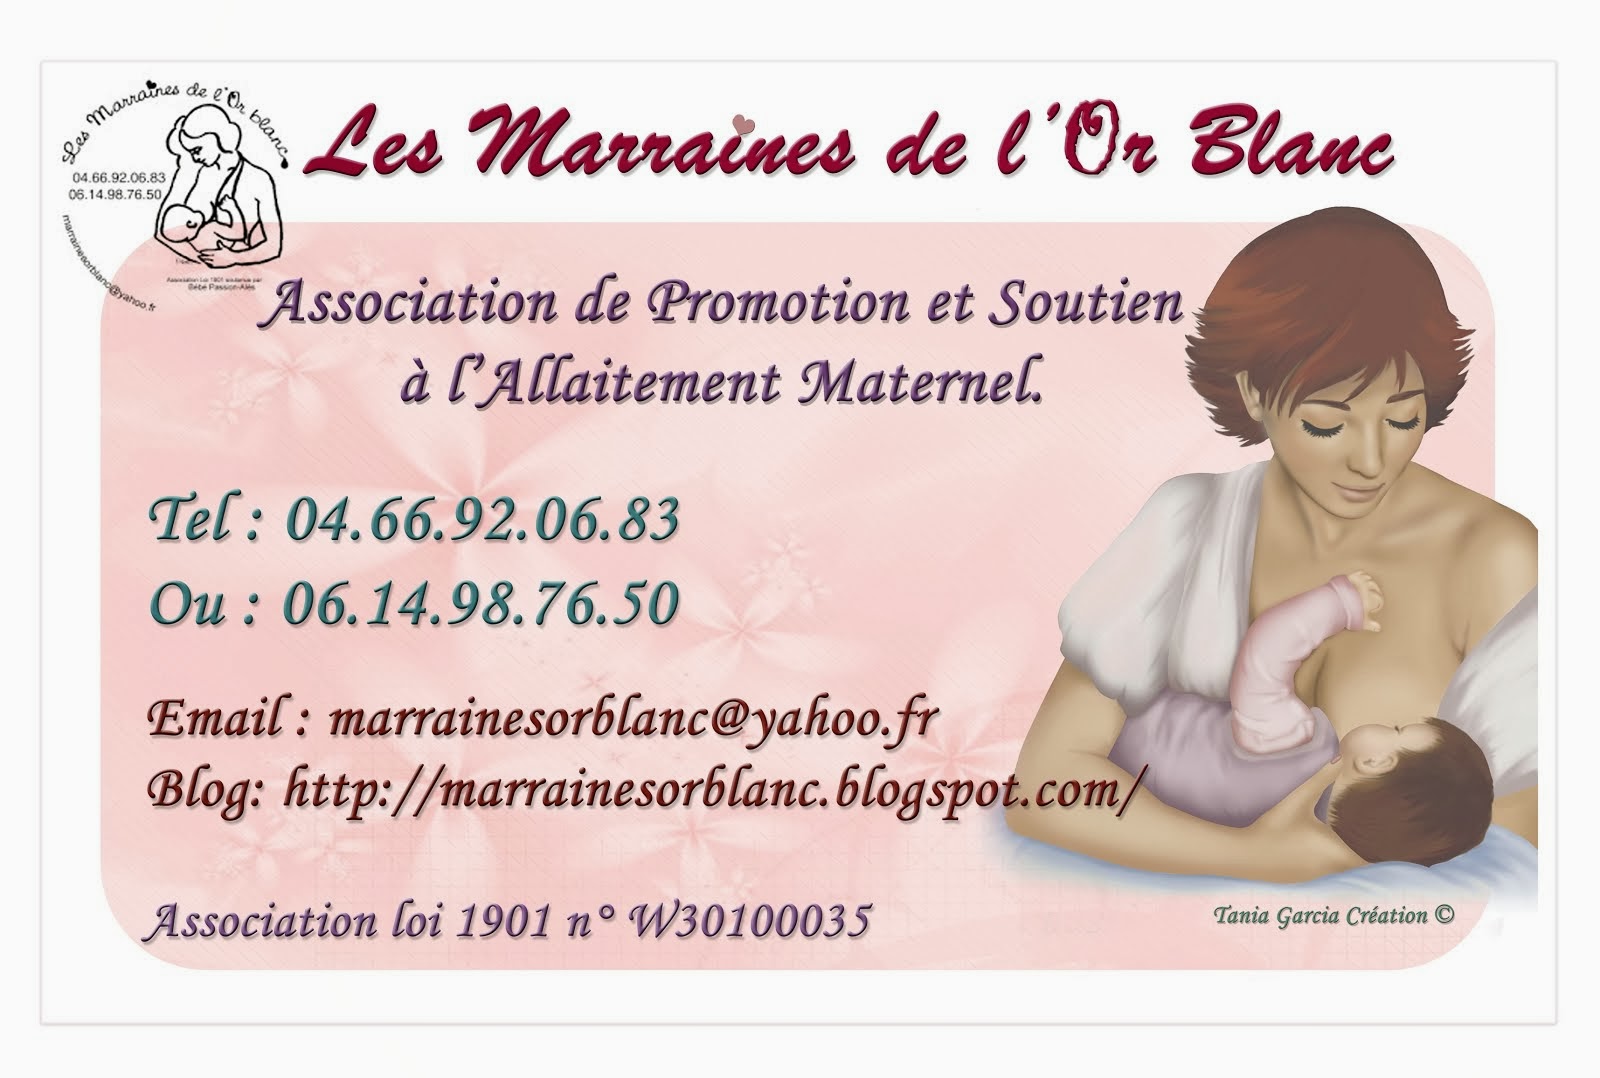 Notre Association sur perinat.fr